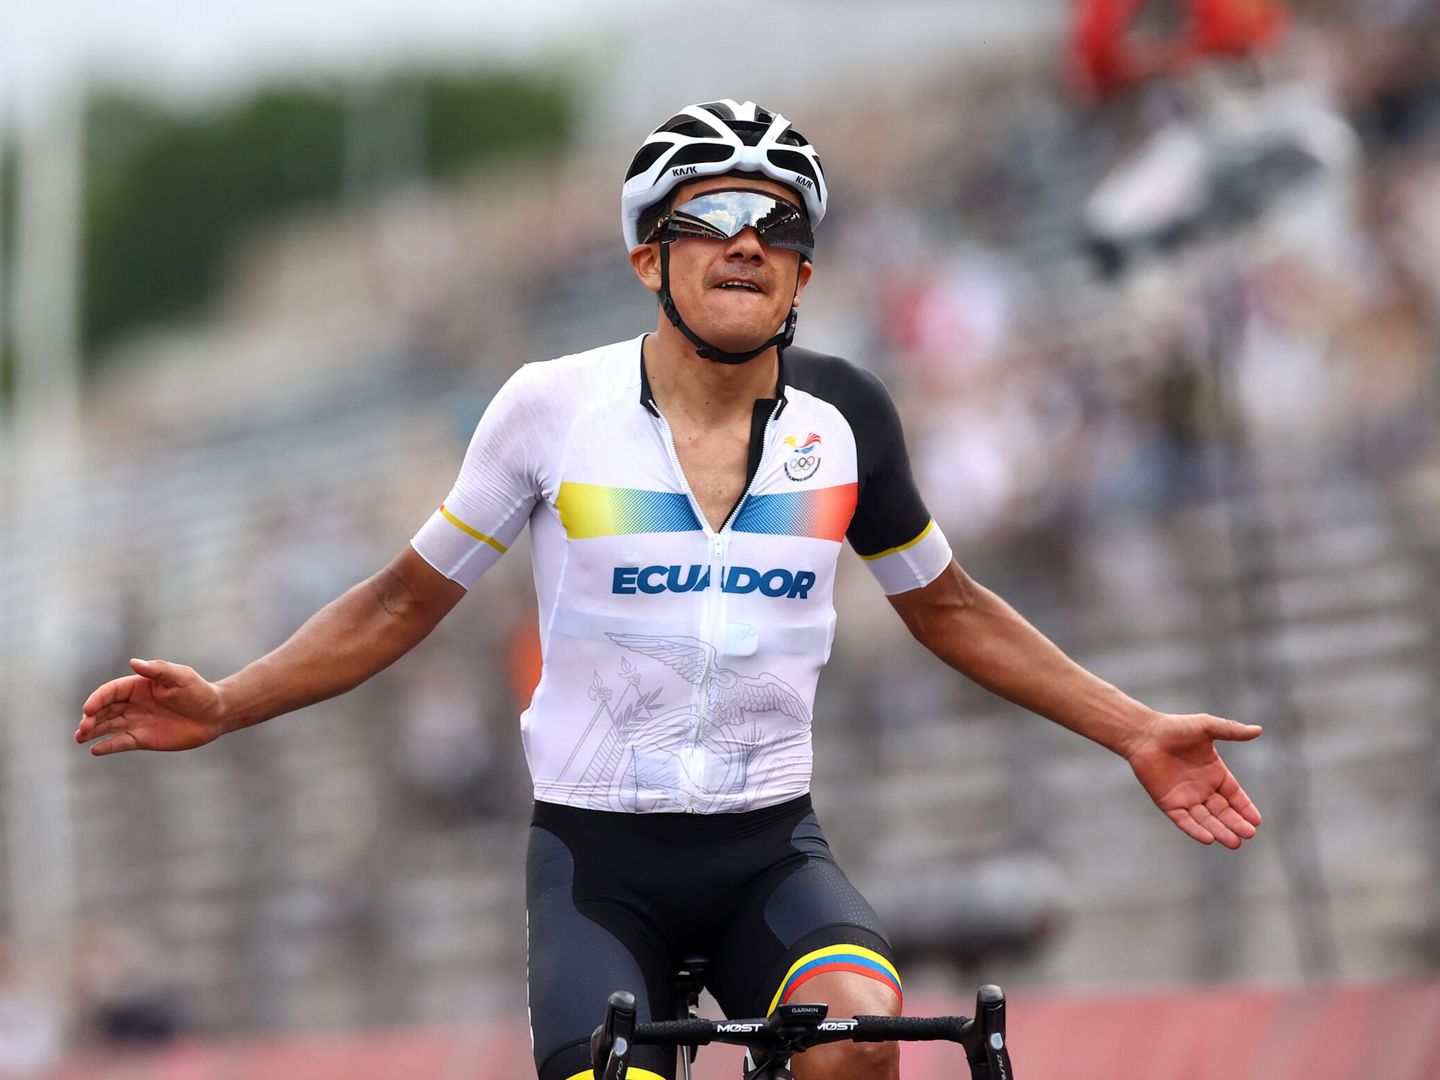 Richard Carapaz entra en la meta del Circuito de Fuji para ganar la medalla de oro. (Reuters)